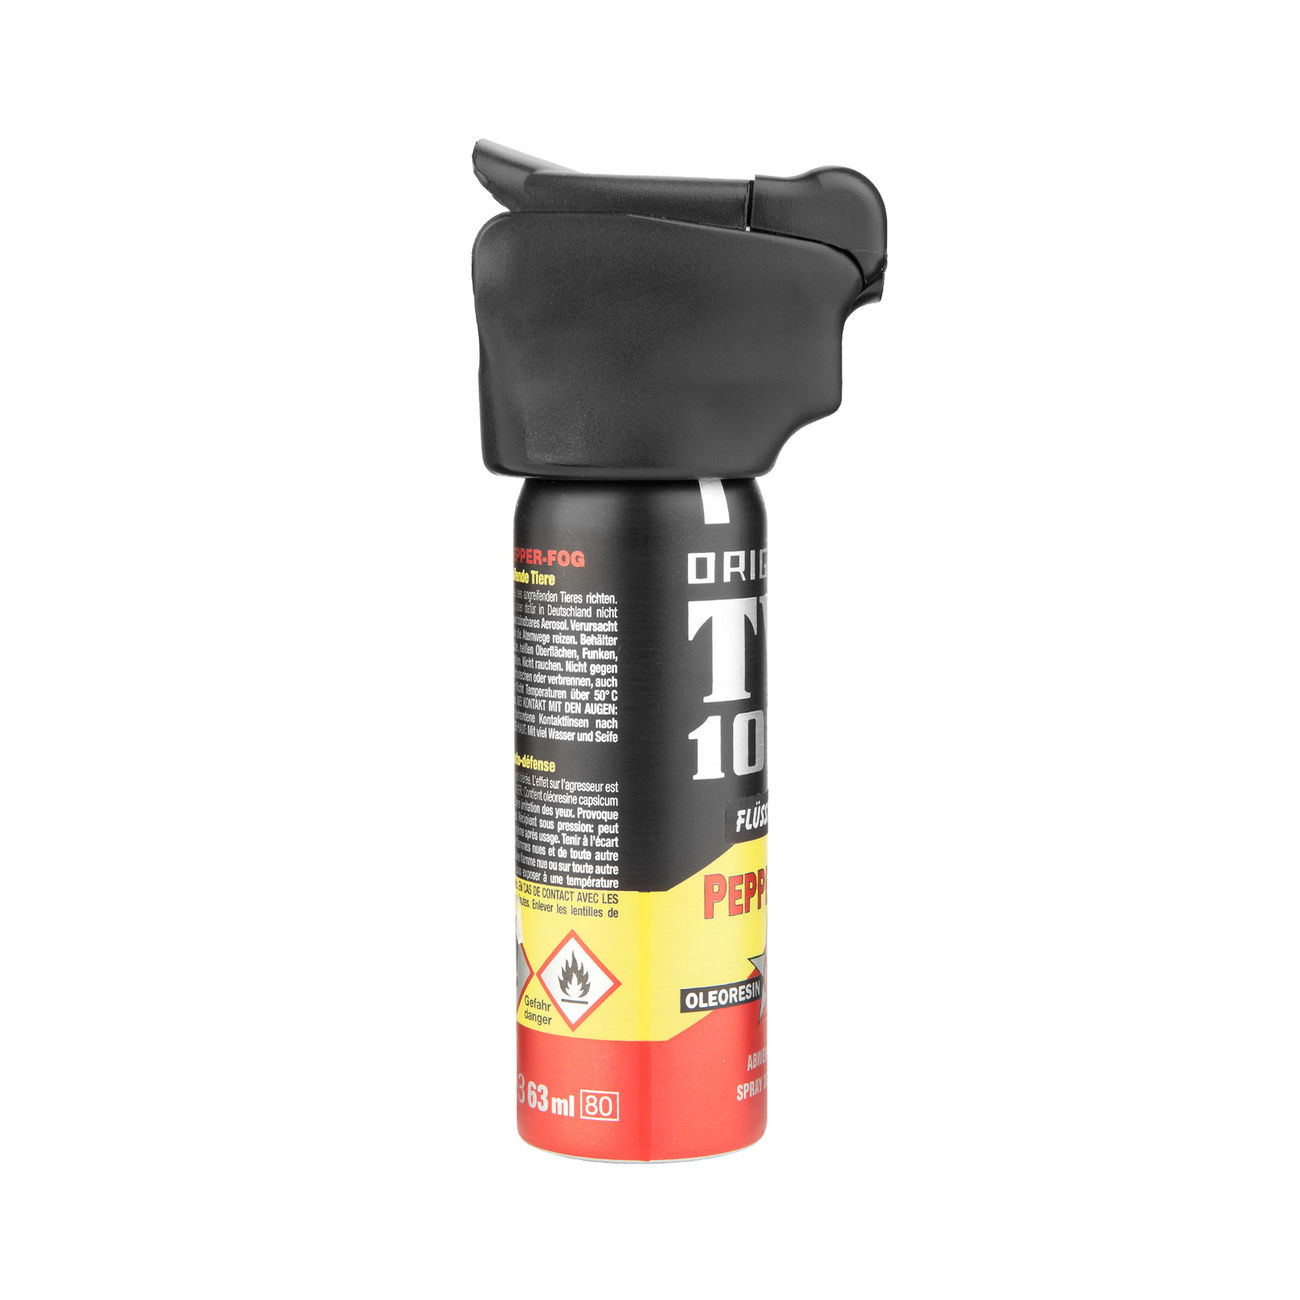 Abwehrspray TW1000 Pfefferspray mit LED zielgenauer Strahl, 63 ml Bild 2